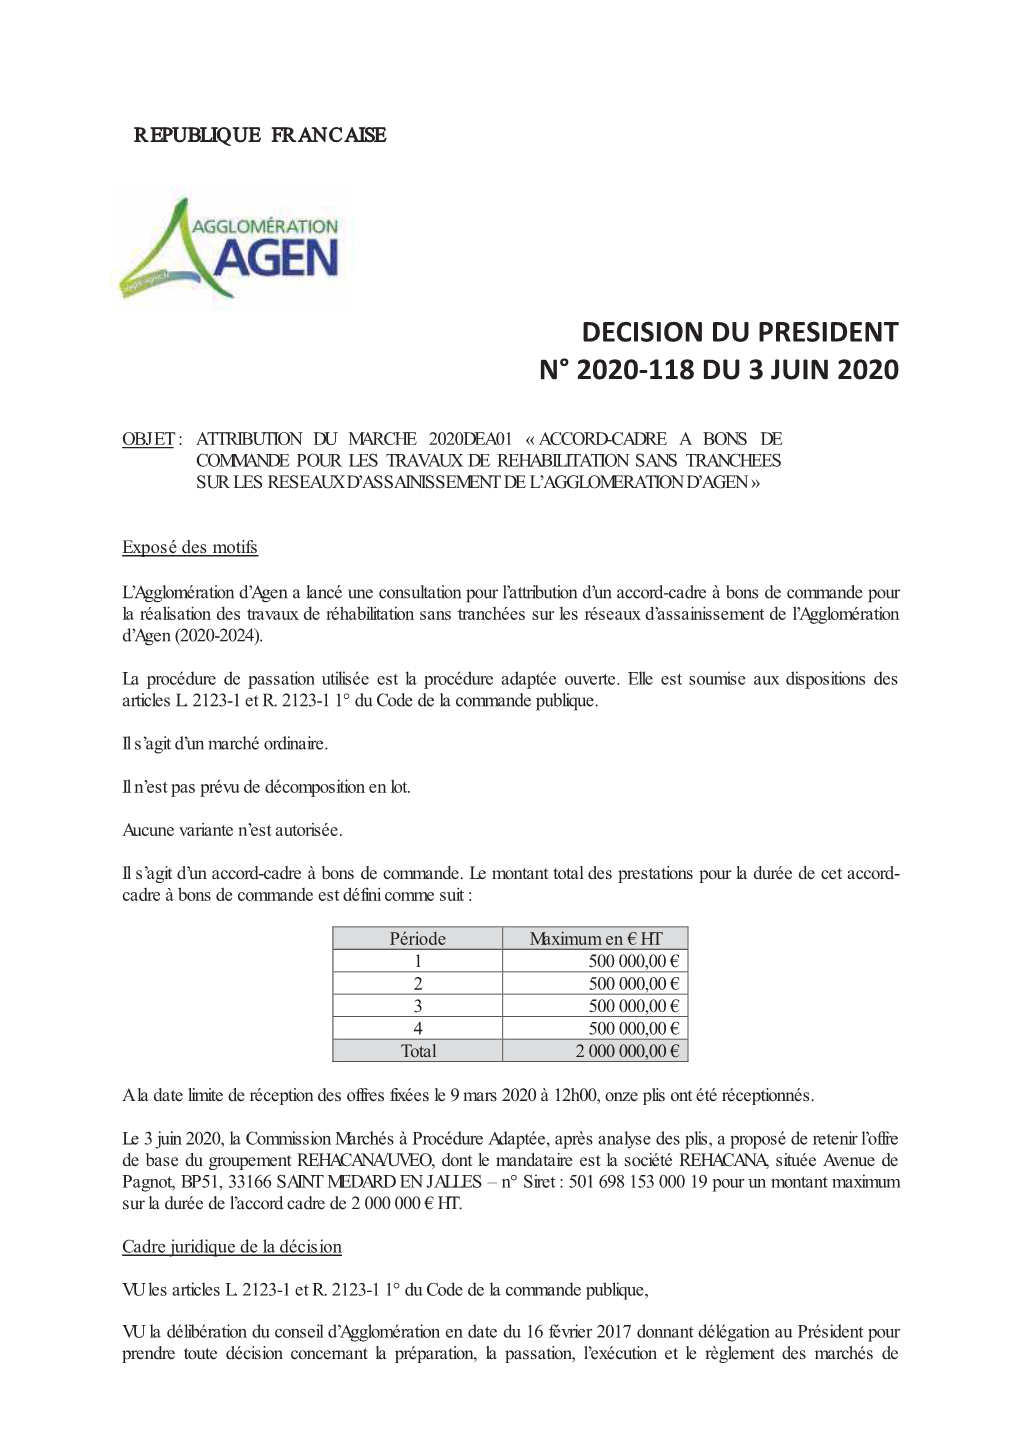 Decision Du President N° 2020-118 Du 3 Juin 2020